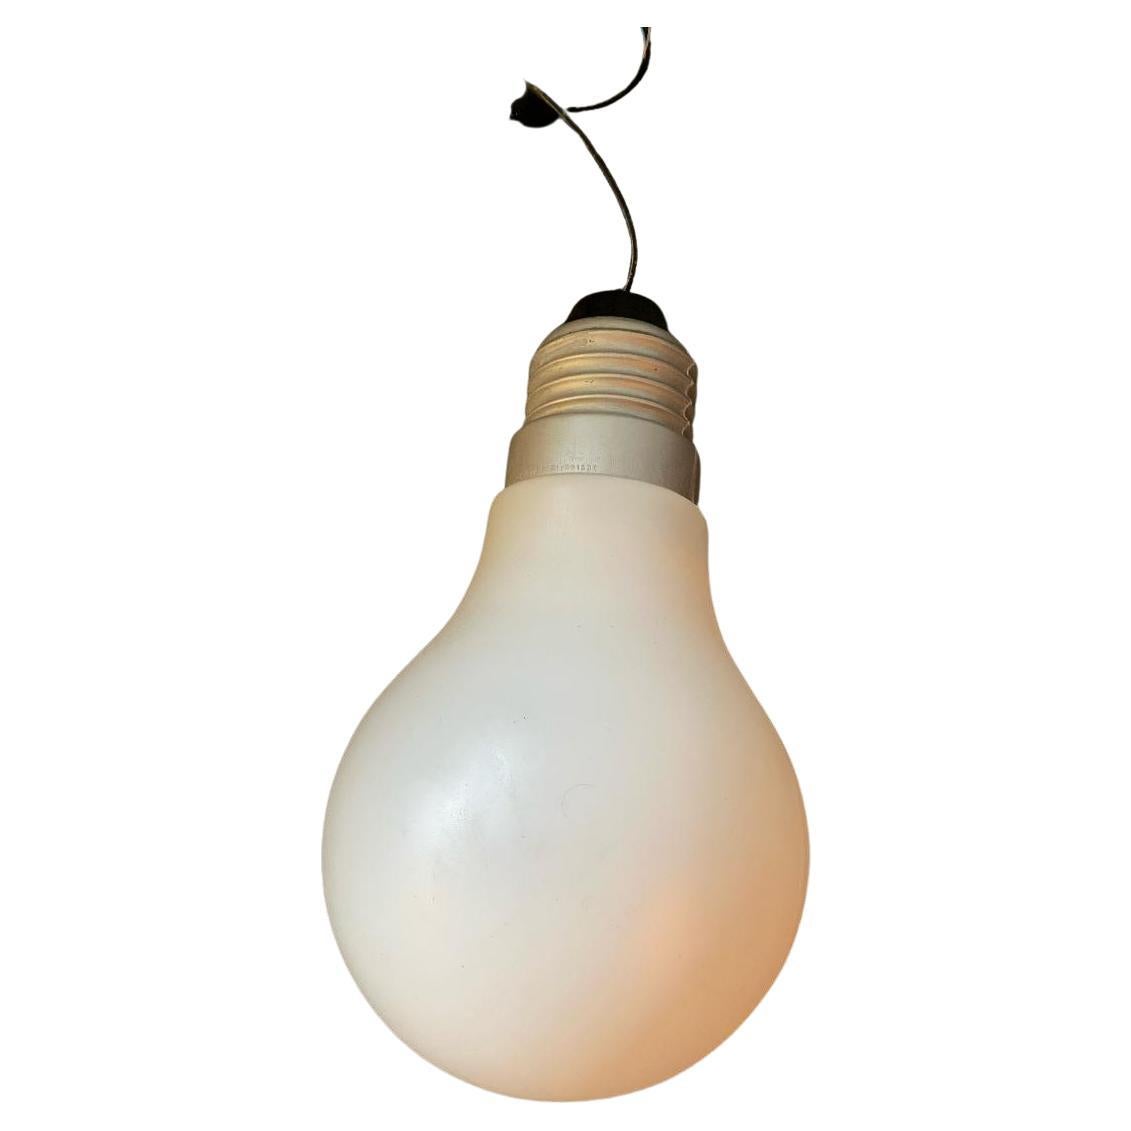 Outsized Light Bulb Floor or Hanging Lamp 'Bulb Bulb' by Ingo Maurer For Sale